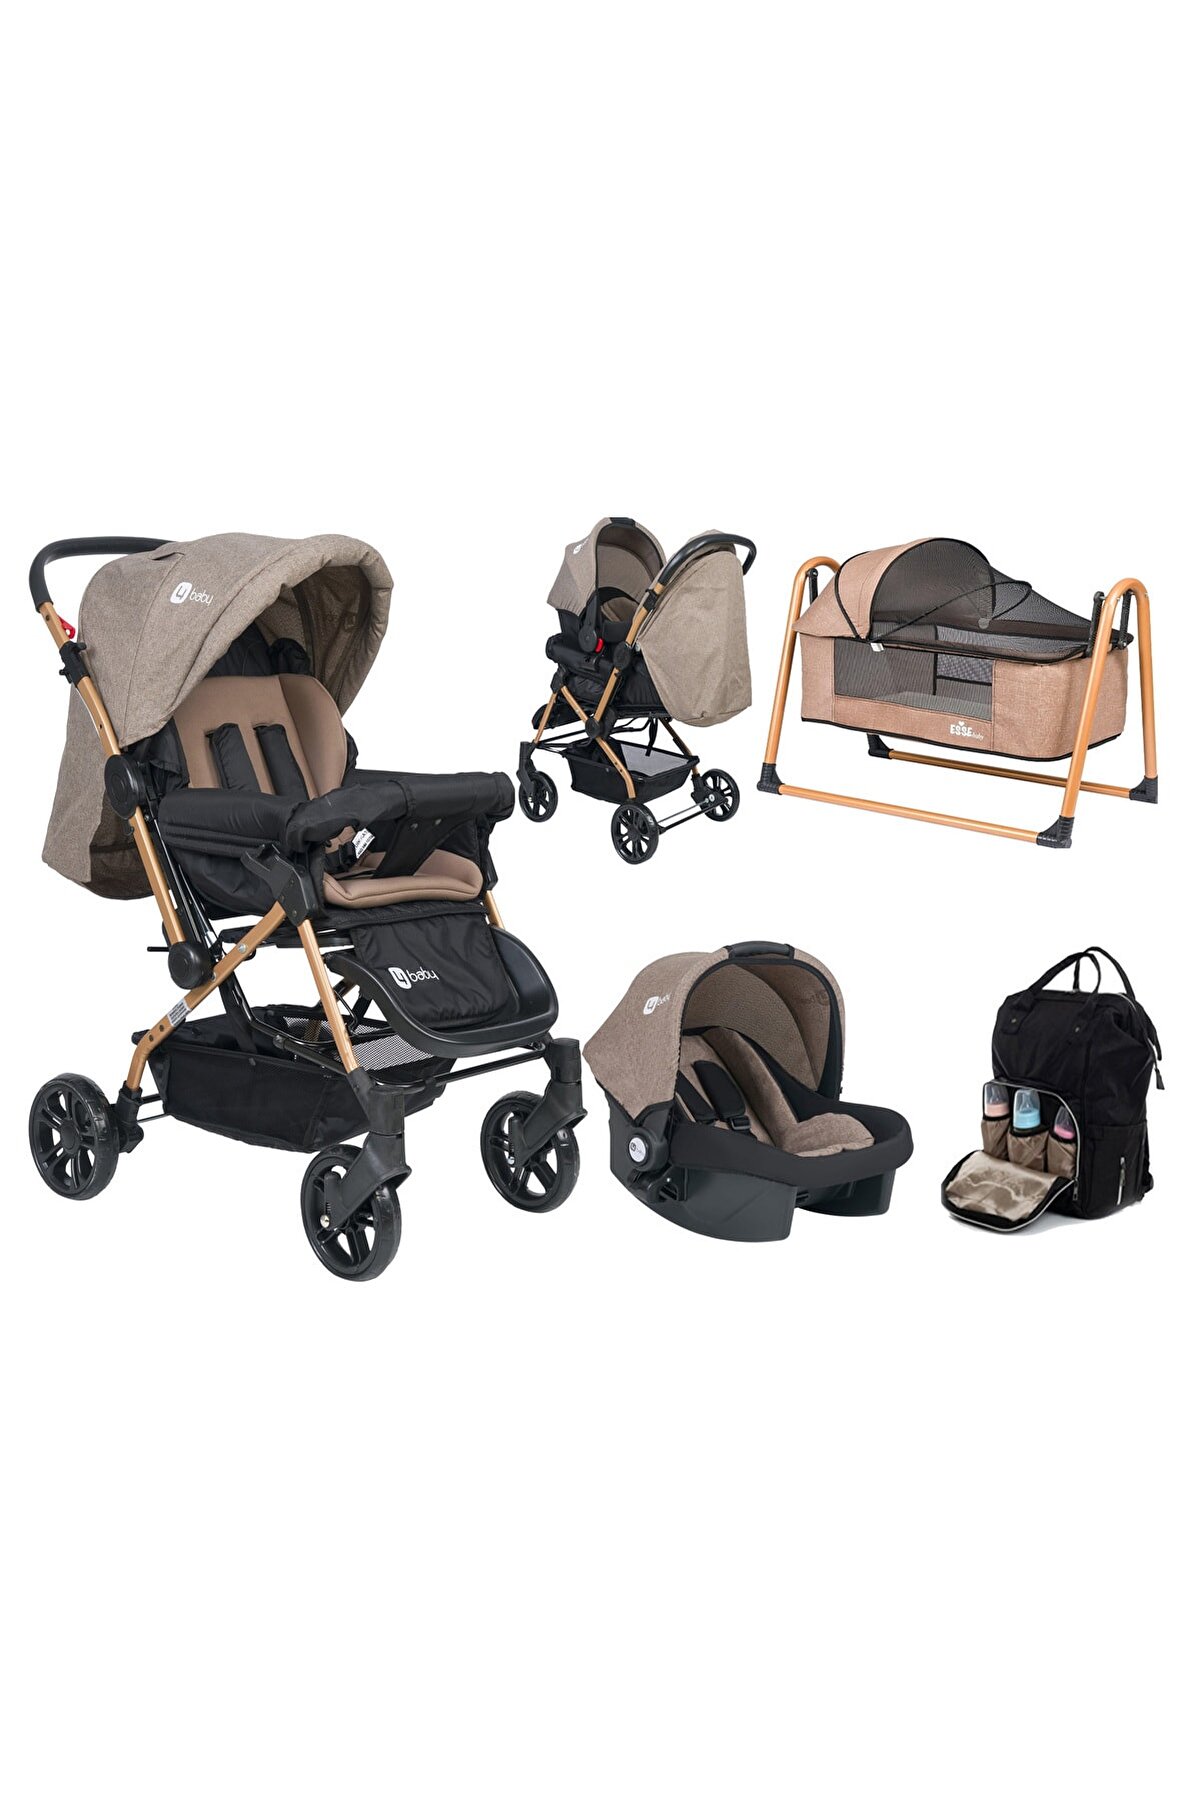 4 Baby Olympus çift yönlü bebek arabası puset çanta beşik fırsat seti